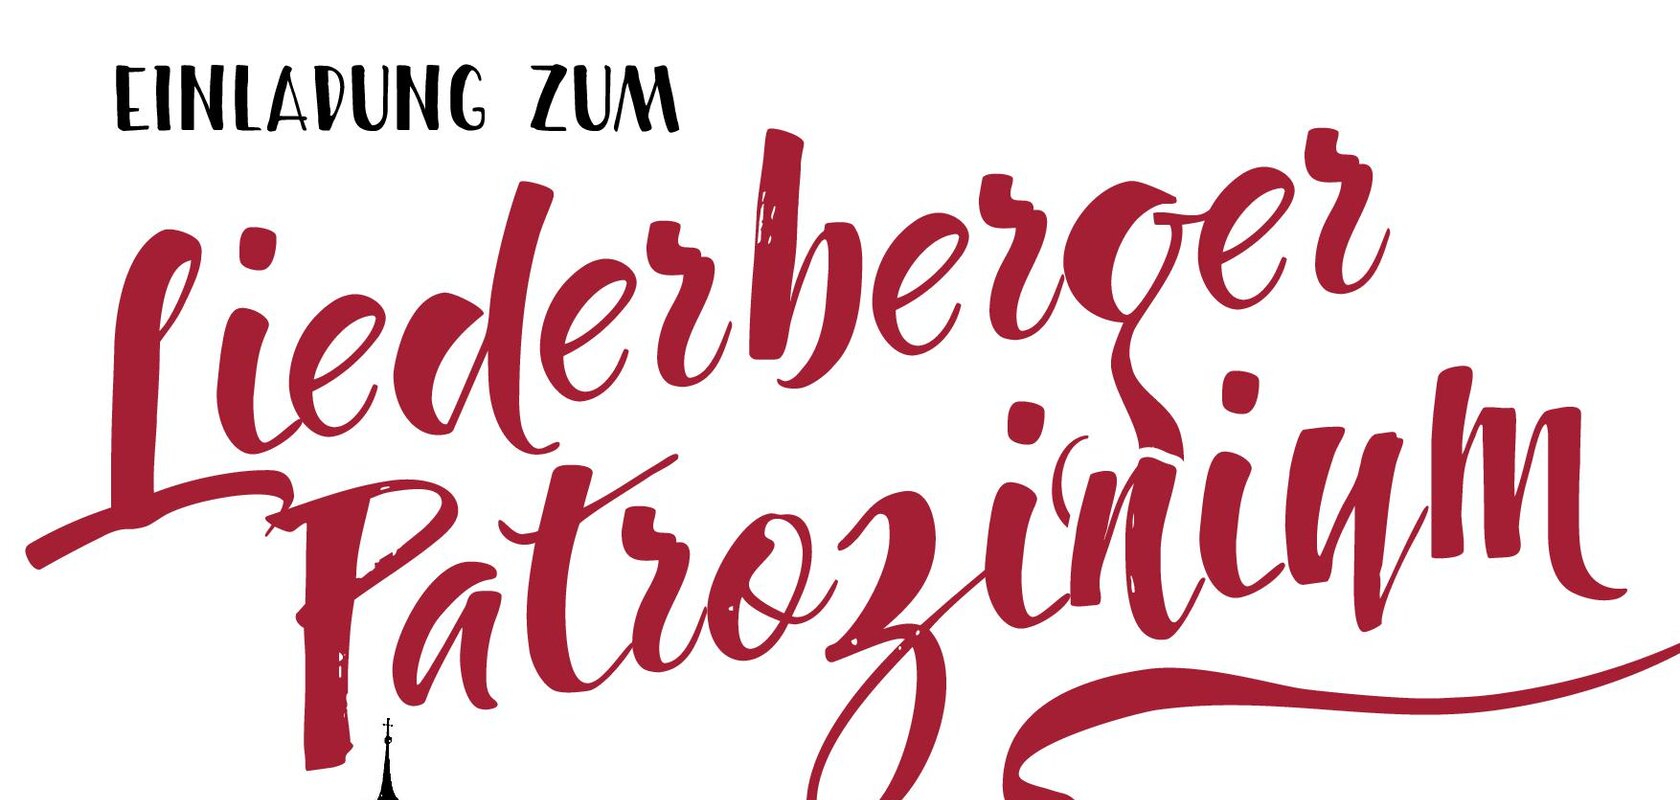 Liederberger Patrozinium 18. und 19.05.2024